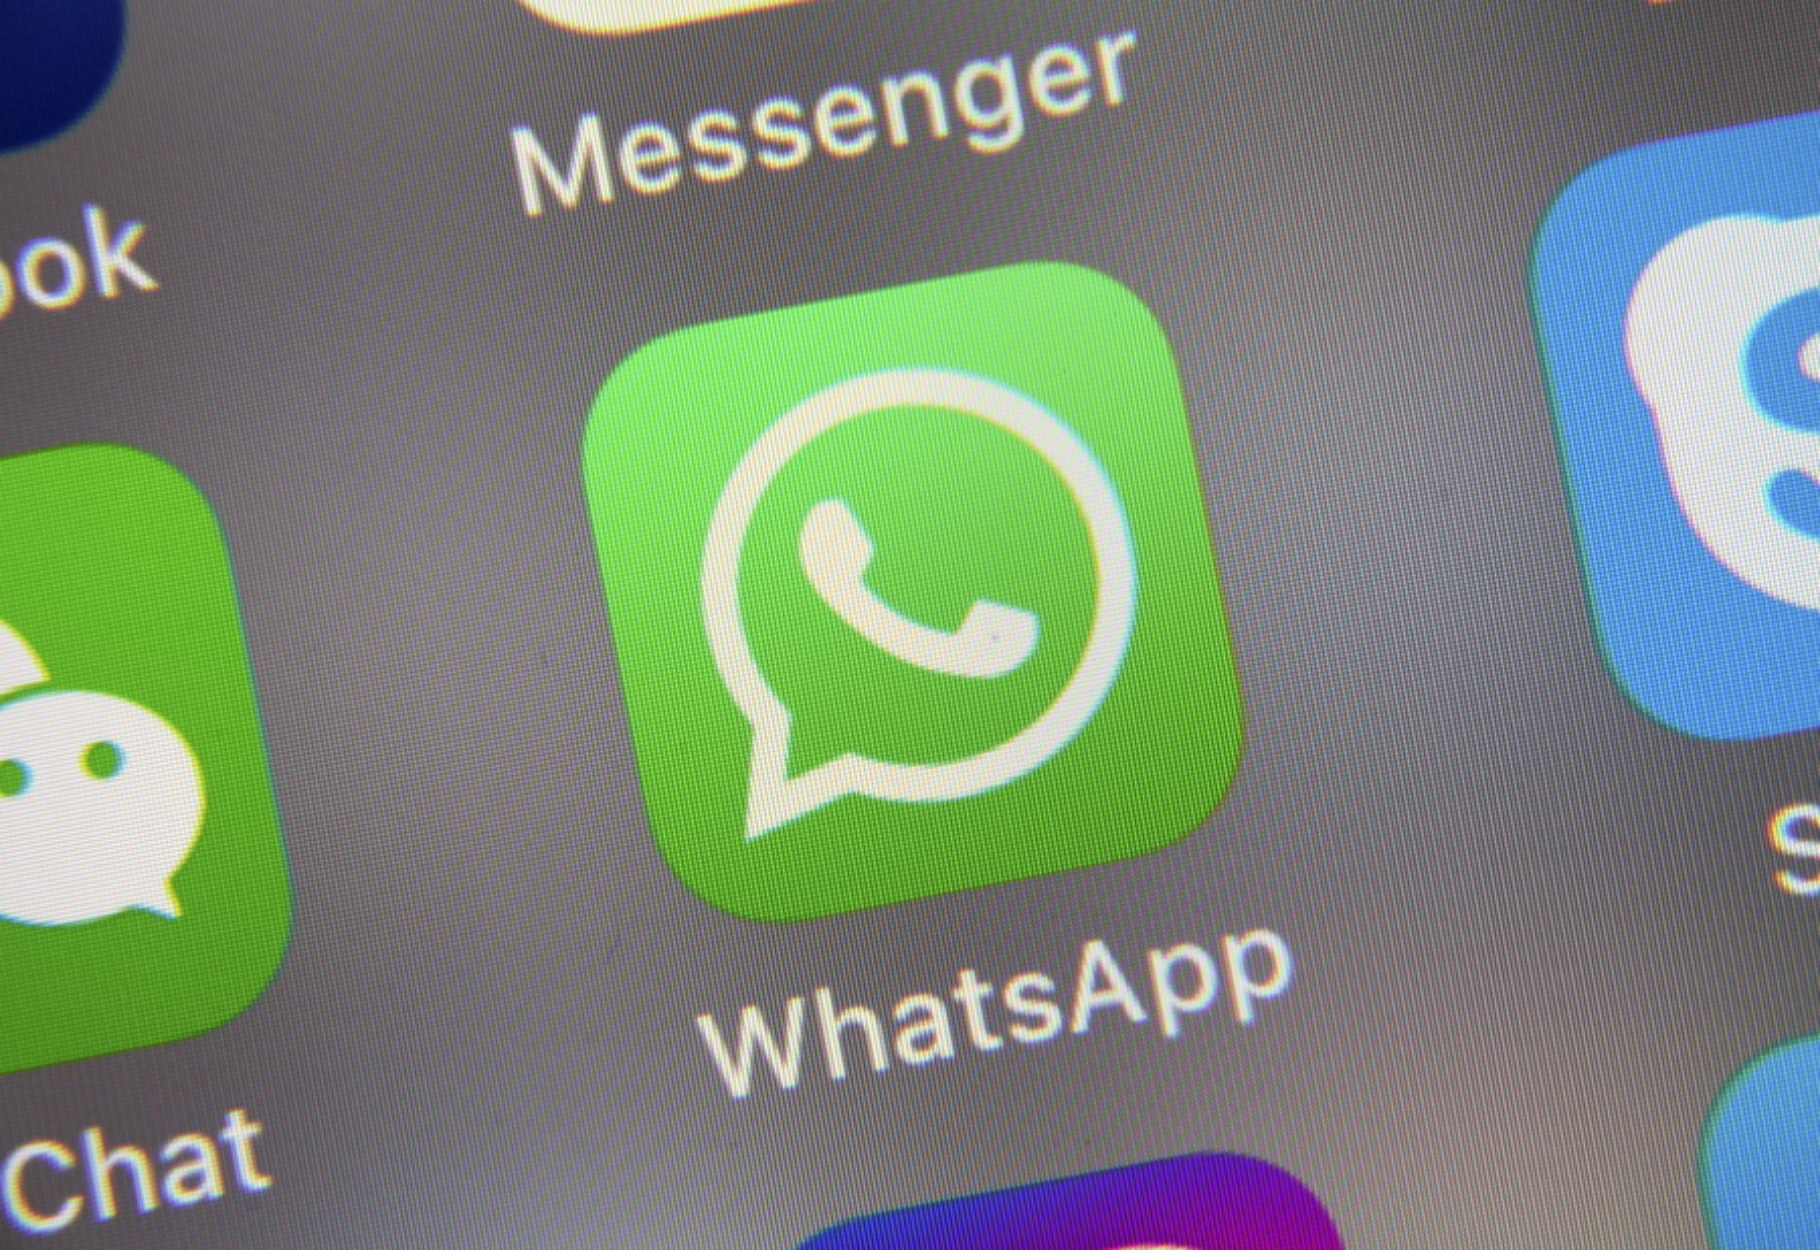 Έπεσε το WhatsApp – Προβλήματα για εκατομμύρια χρήστες σε όλο τον κόσμο